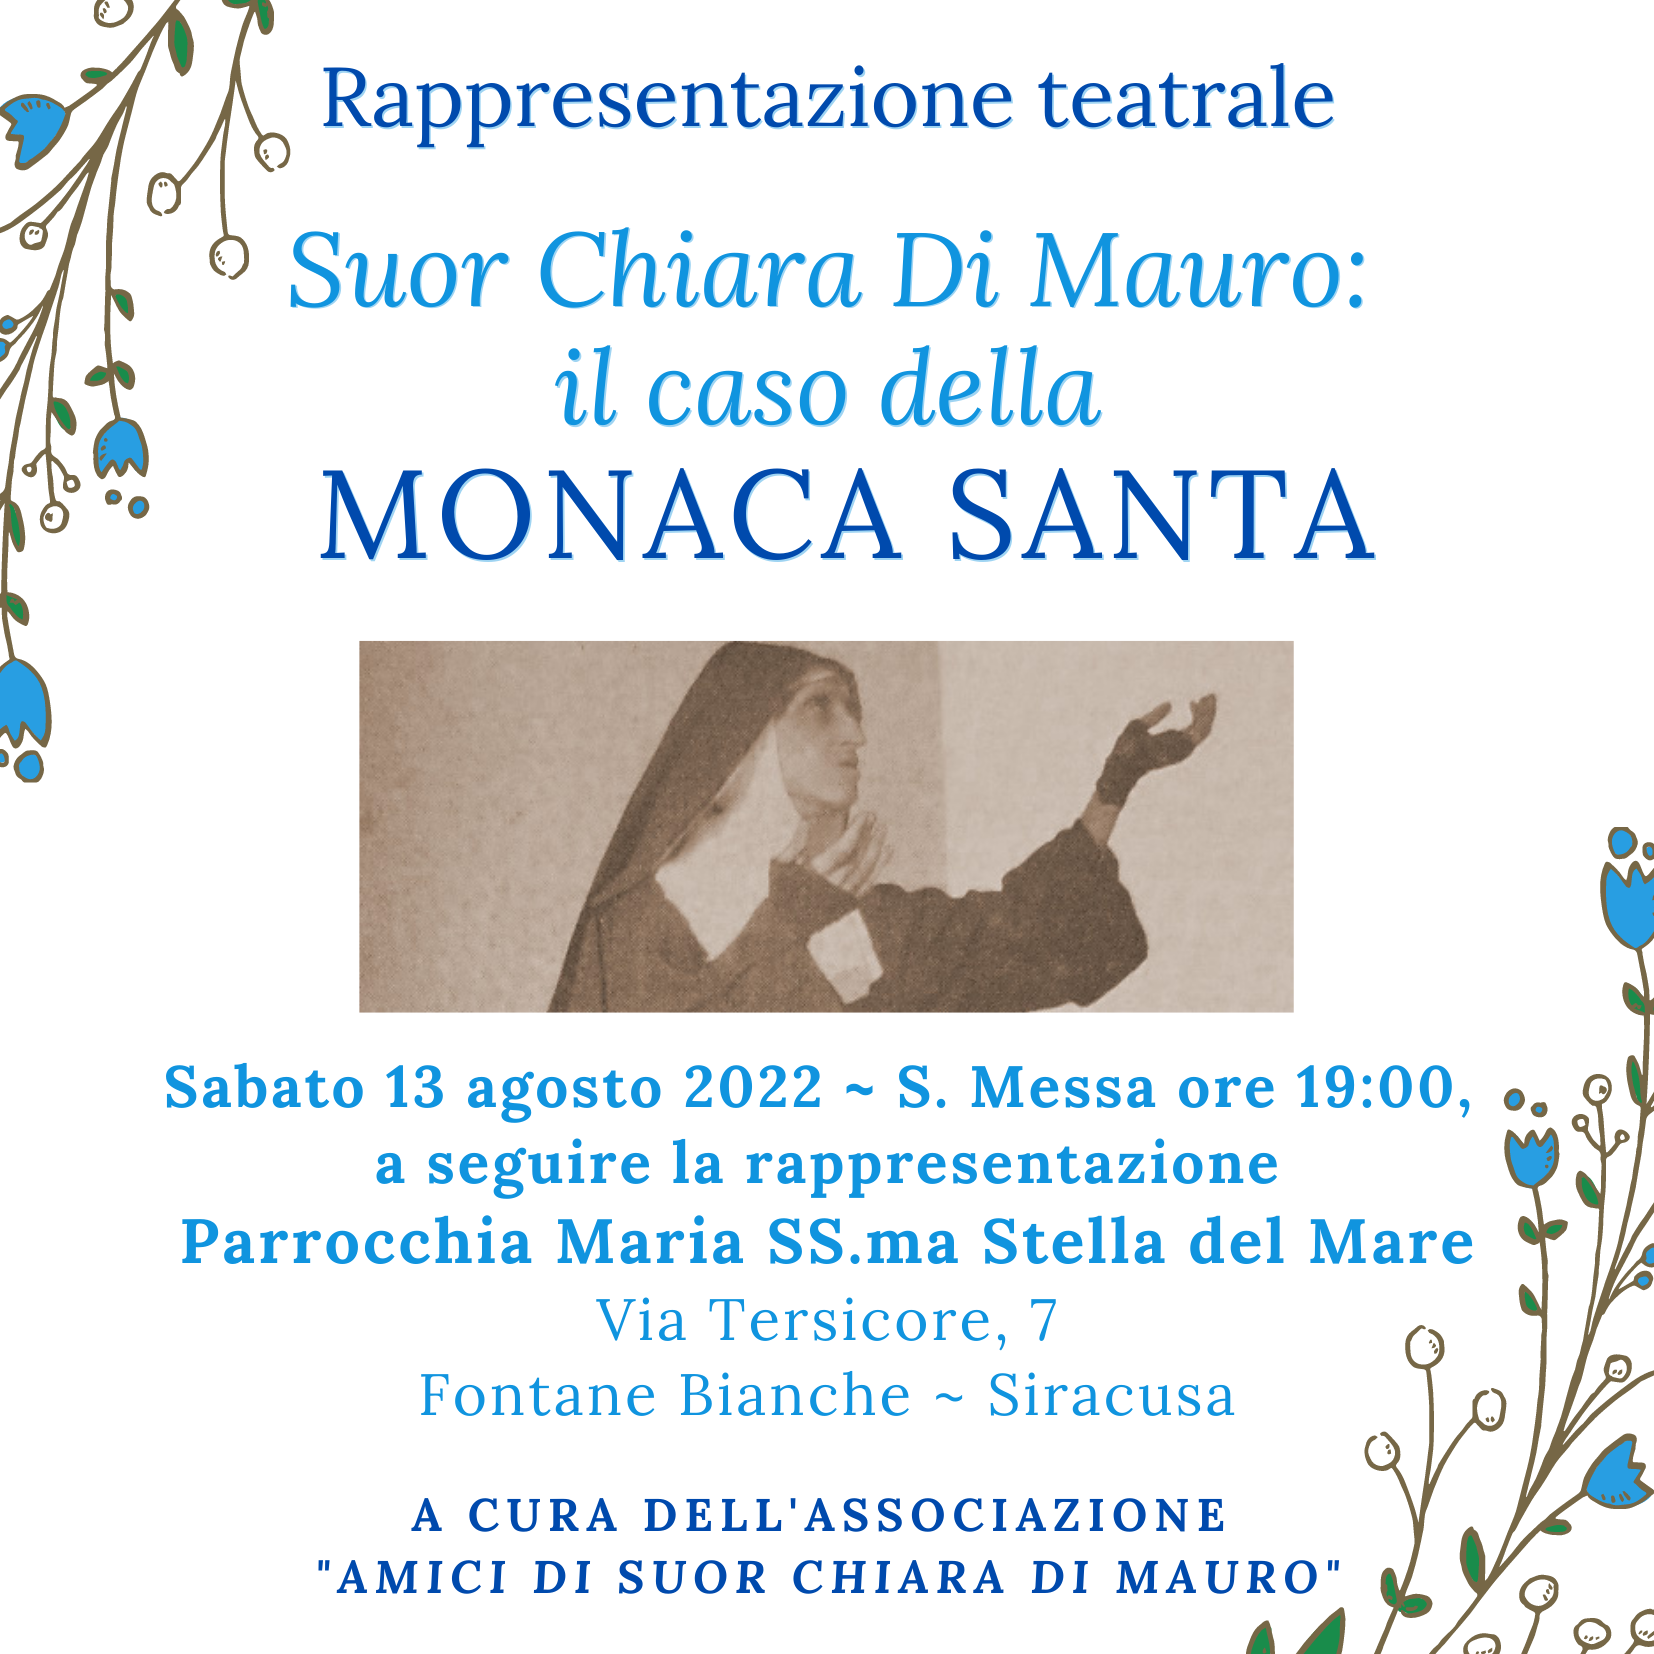 A Fontane Bianche la rappresentazione teatrale “Suor Chiara Di Mauro: il caso della monaca santa”